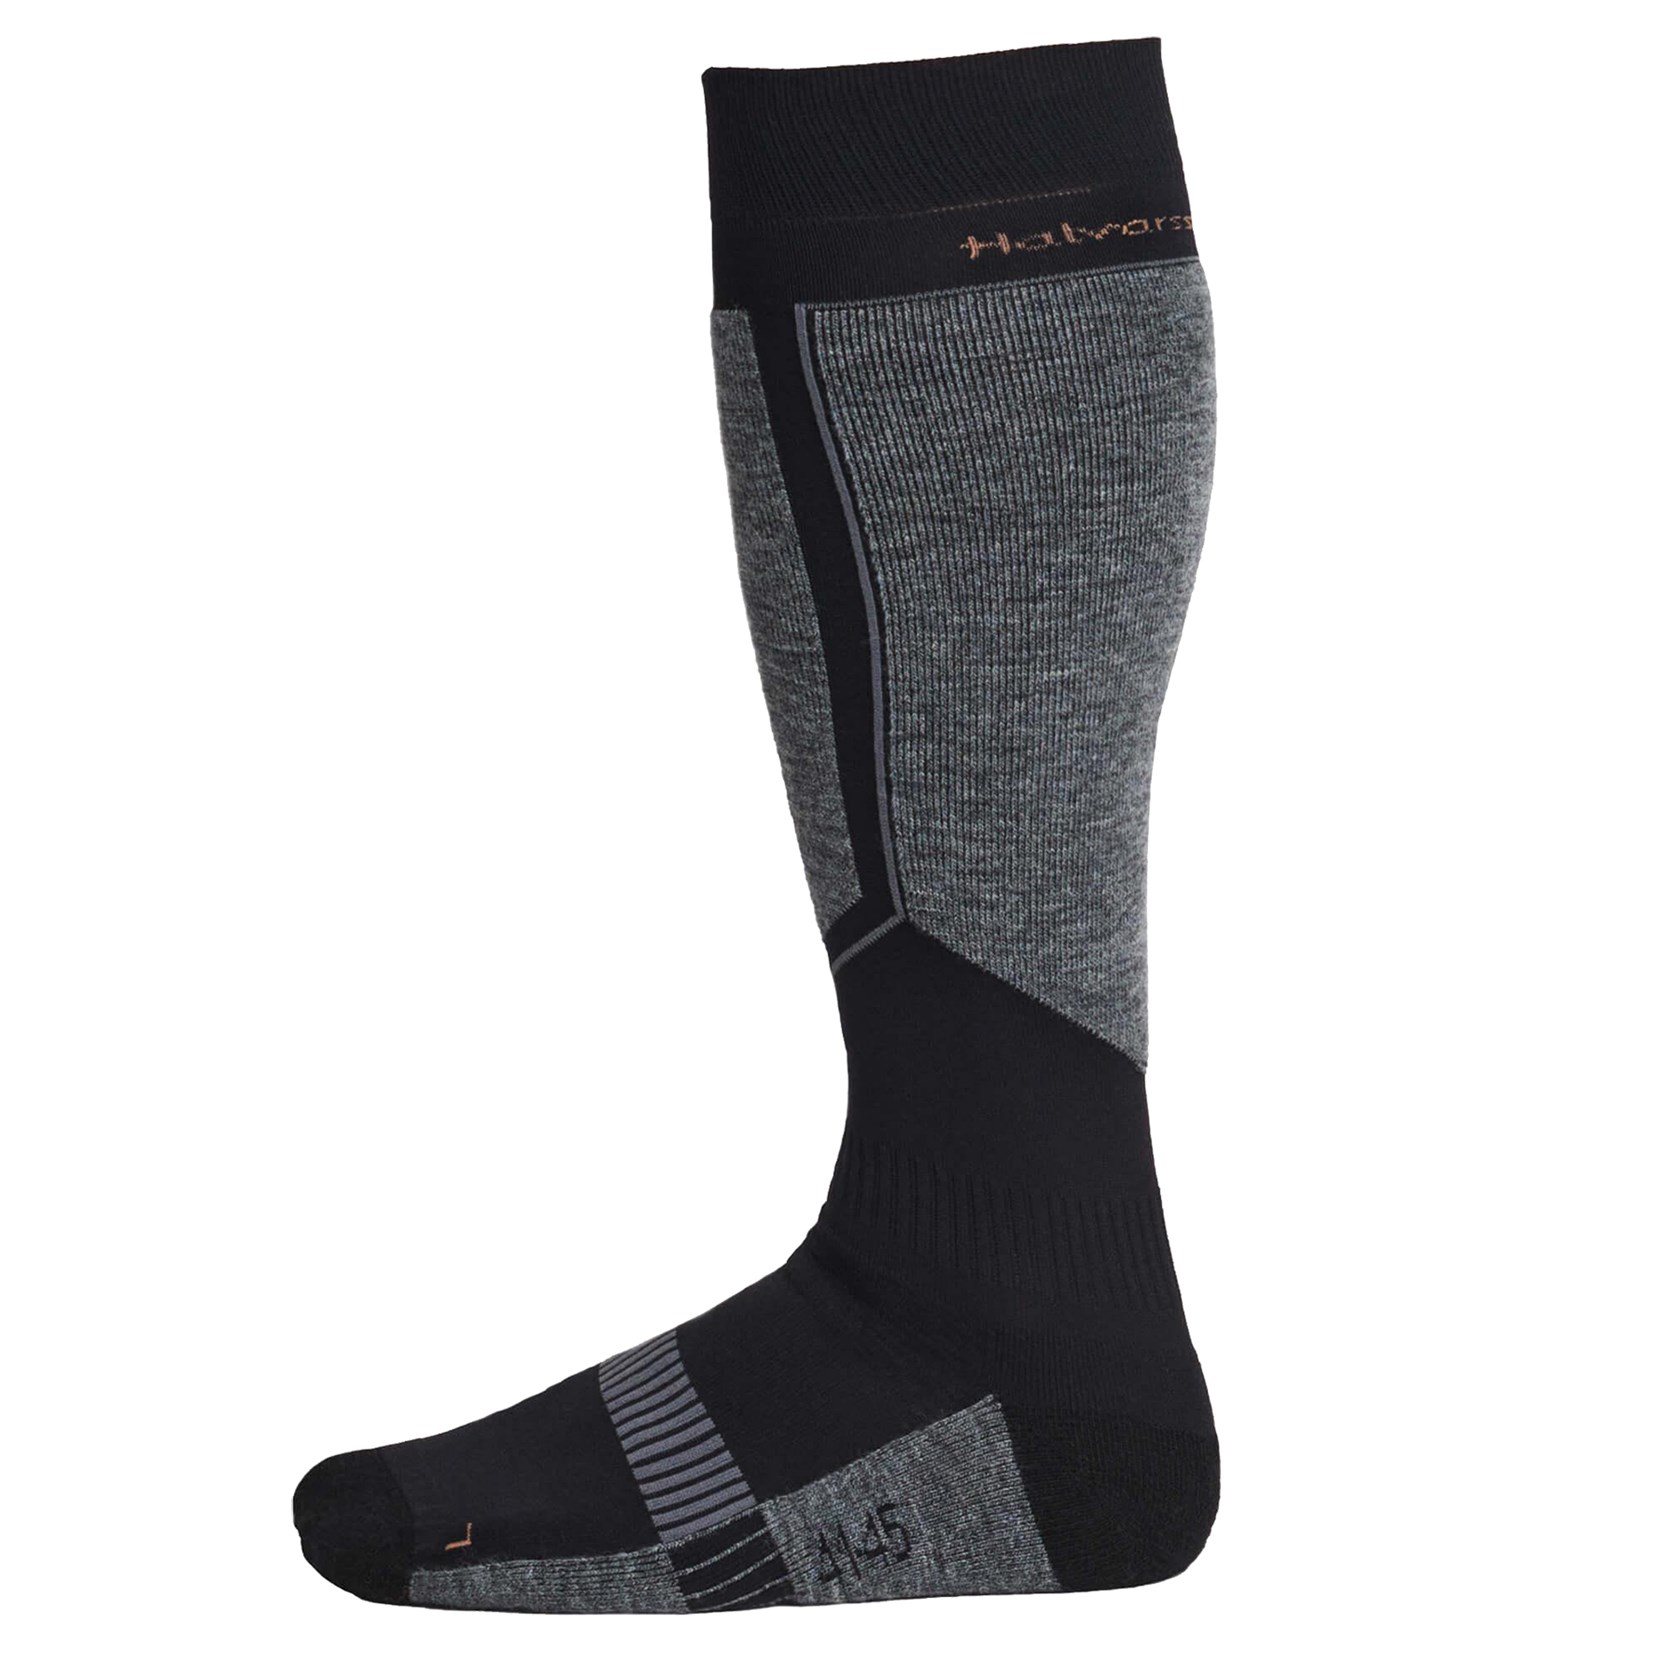 Halvarssons Cool socks in black / brown